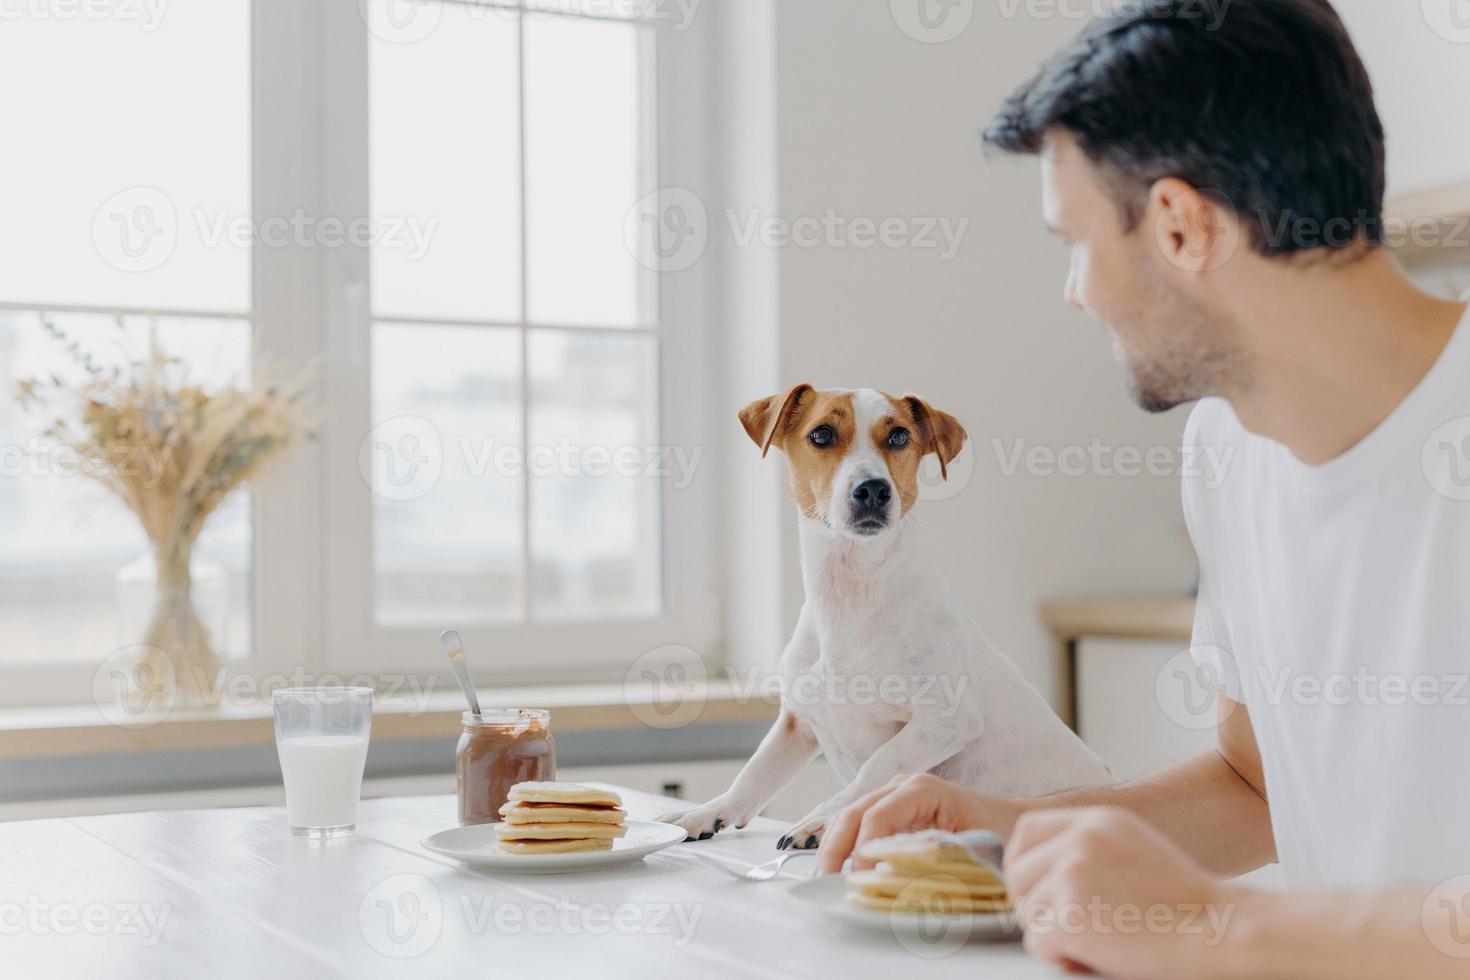 el joven se aleja de la cámara, mira atentamente al perro pedigrí, almuerza juntos, come deliciosos panqueques en la mesa de la cocina, usa tenedores, posa en una amplia sala luminosa con una gran ventana foto